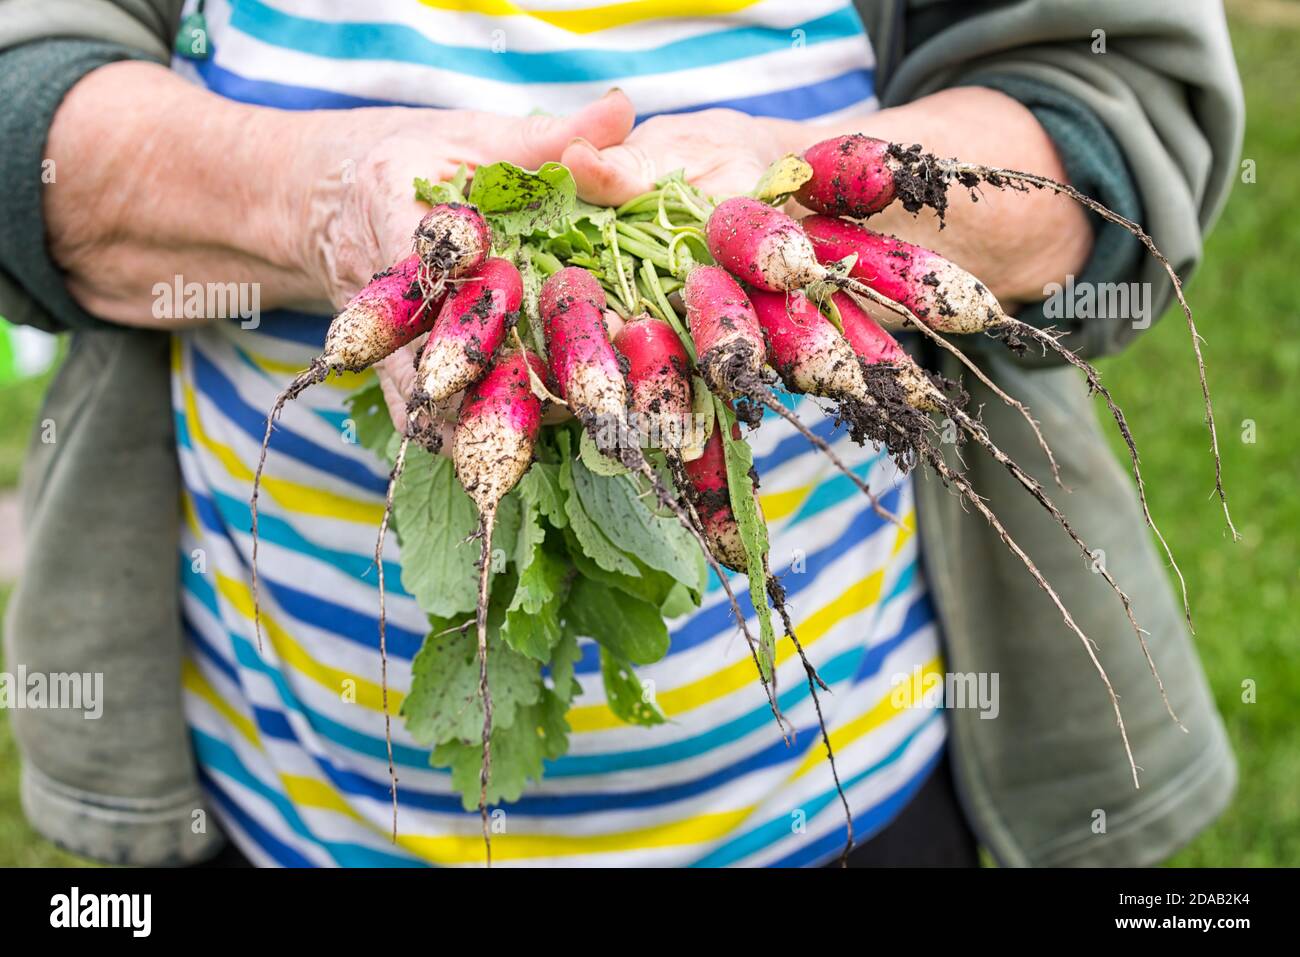 Récolte de radis sur les mains de l'agriculteur. Les mains de femme tiennent la récolte fraîchement botte. Radis en croissance. Aliments biologiques sains, légumes, agriculture, fermer u Banque D'Images